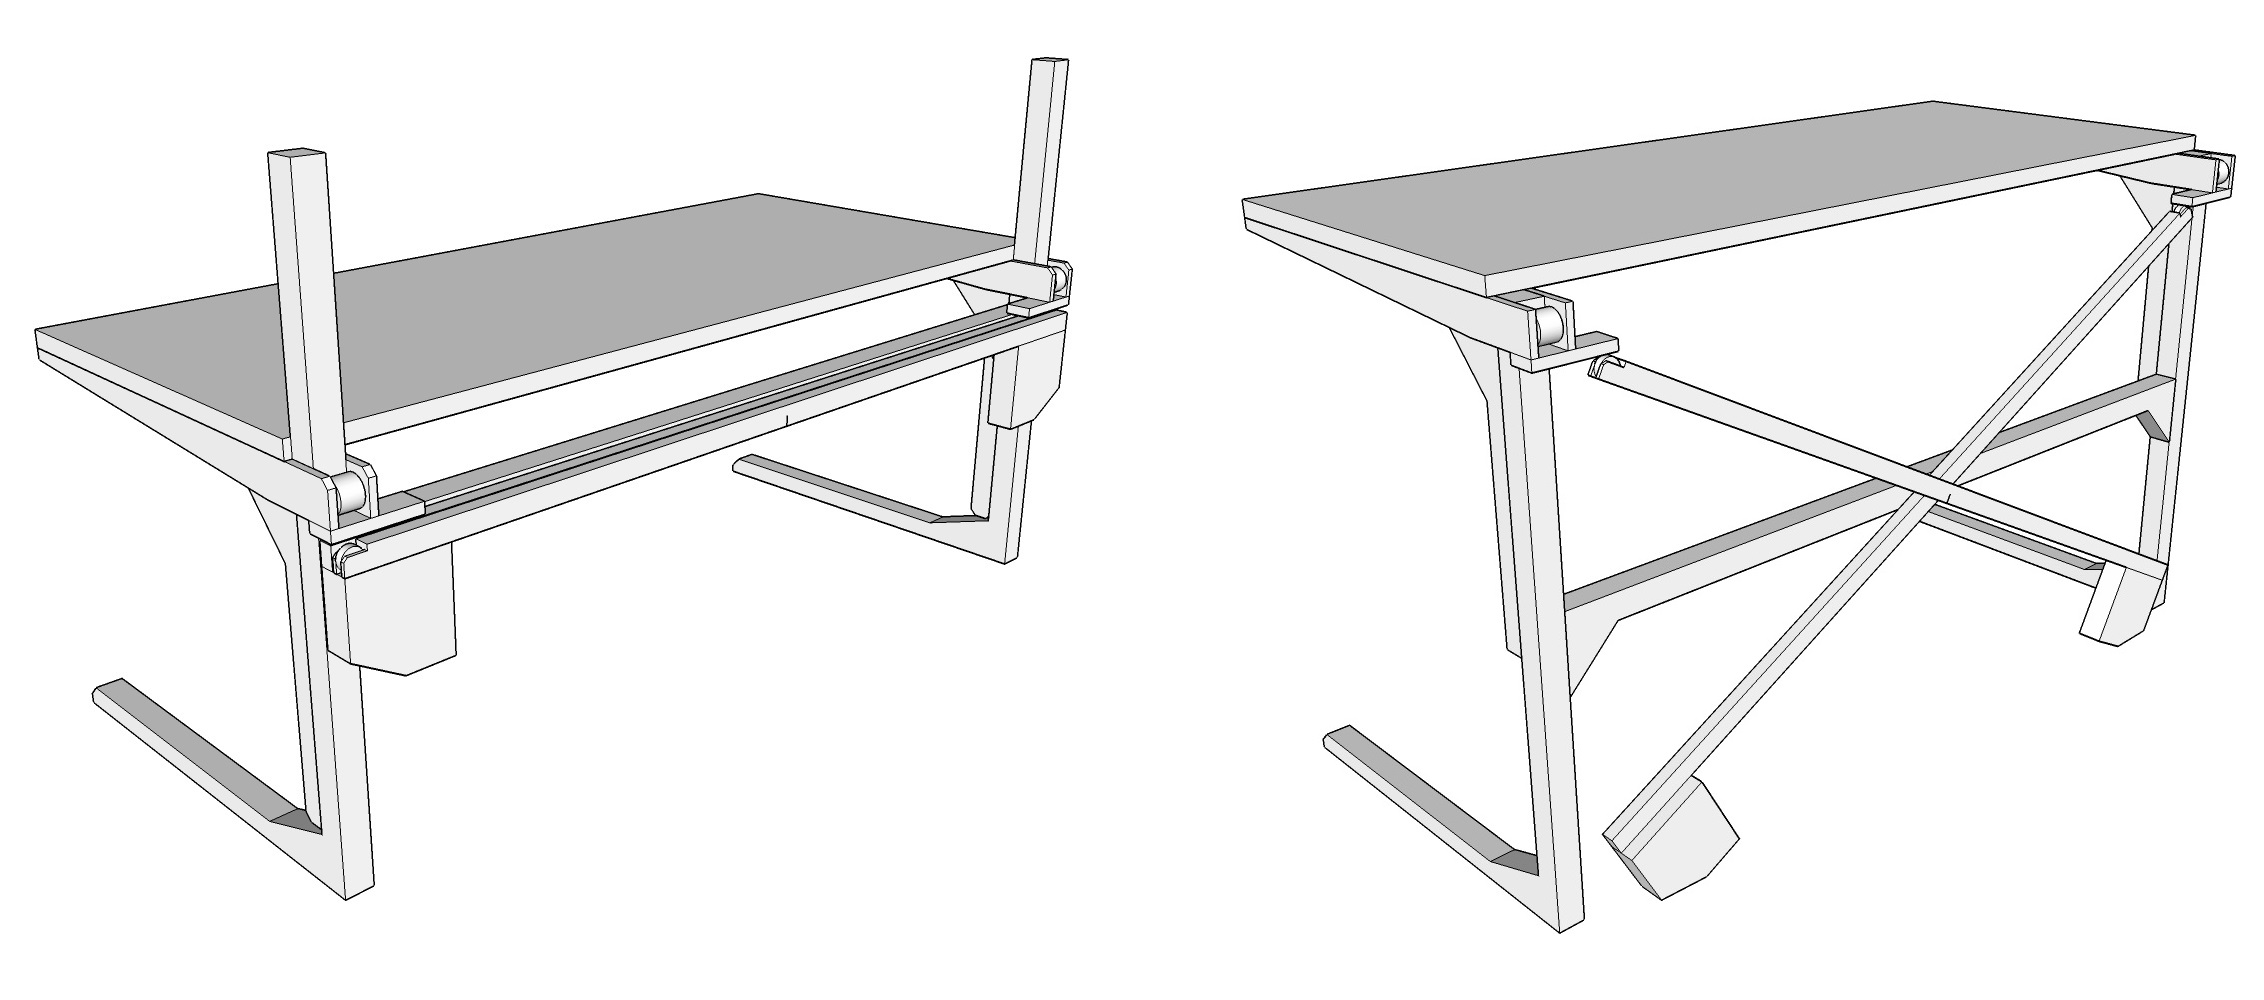 Scott Rumschlag's DIY Motor-Free, Height-Adjustable Standing Desk